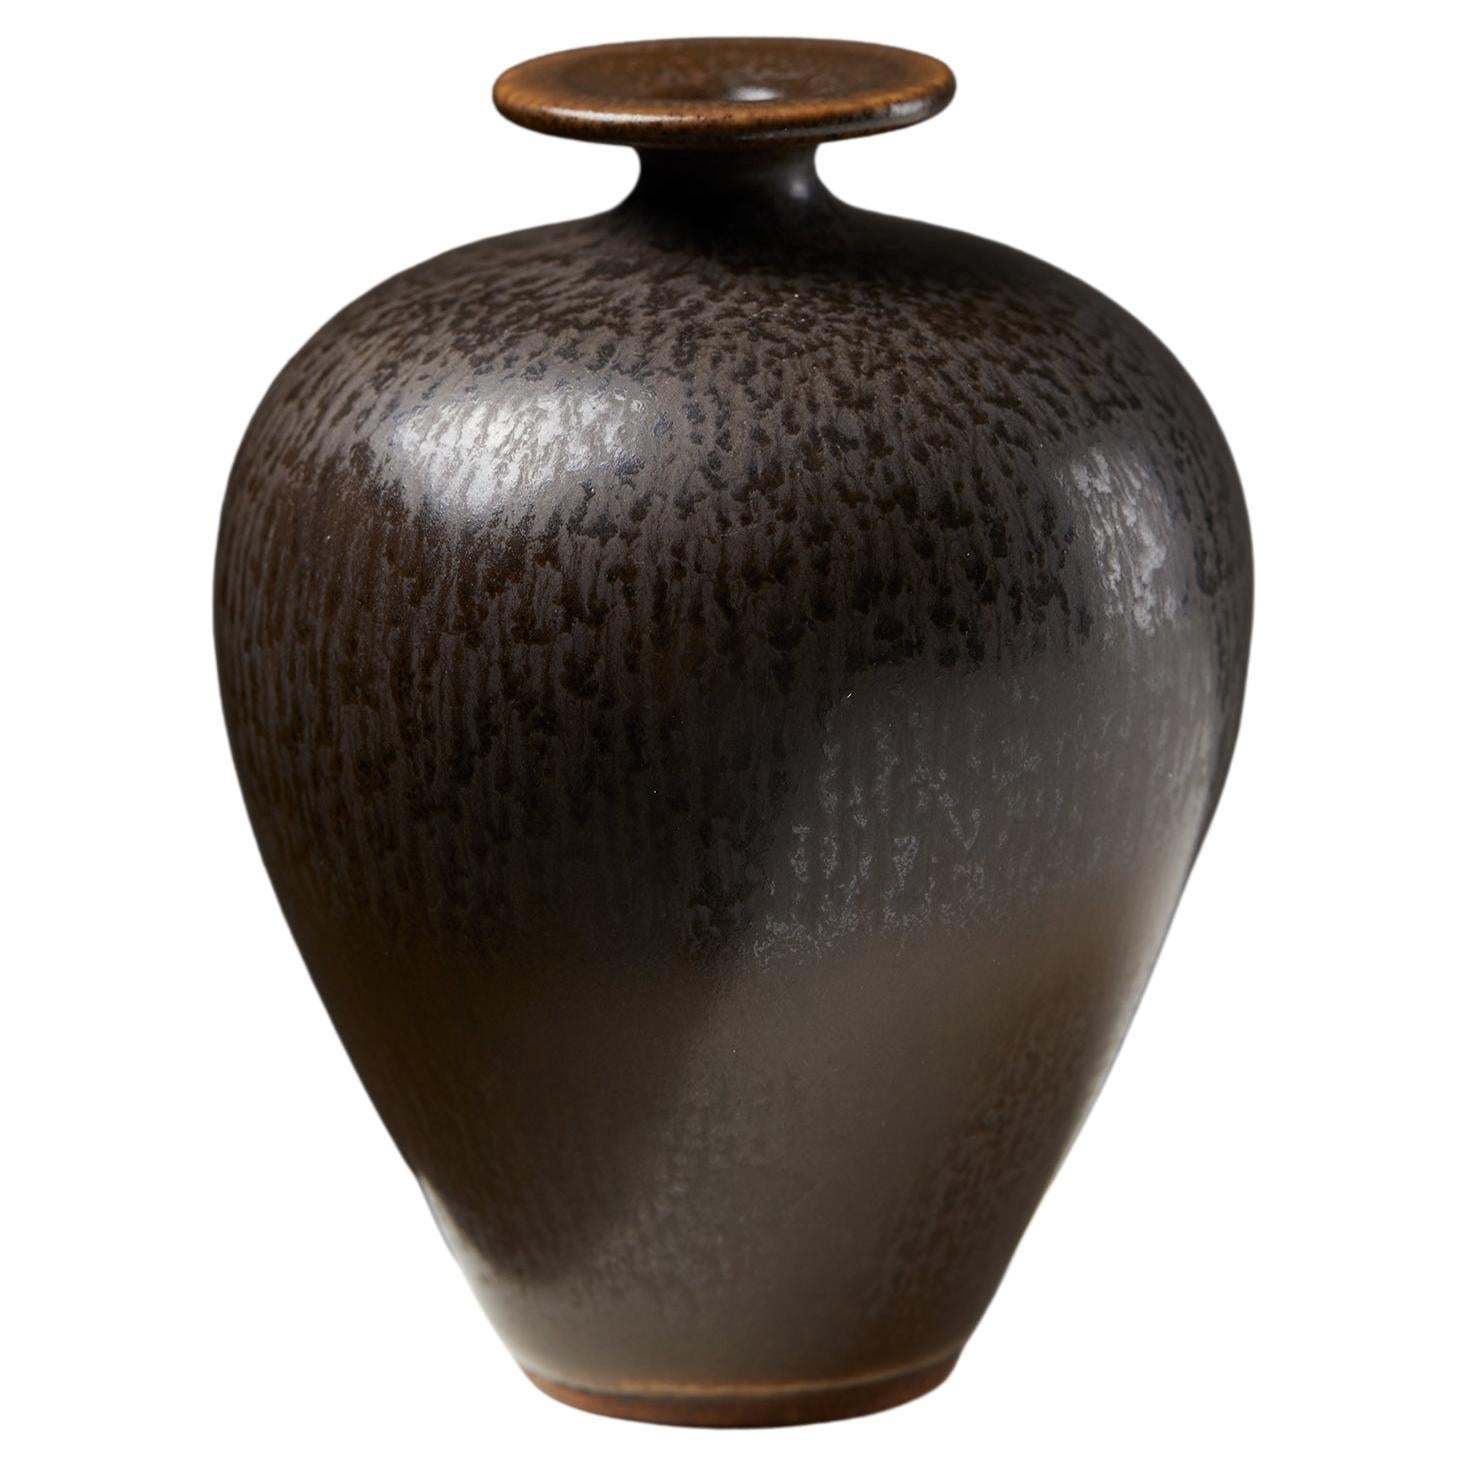 Vase designed by Berndt Friberg for Gustavsberg, Sweden, 1960’s